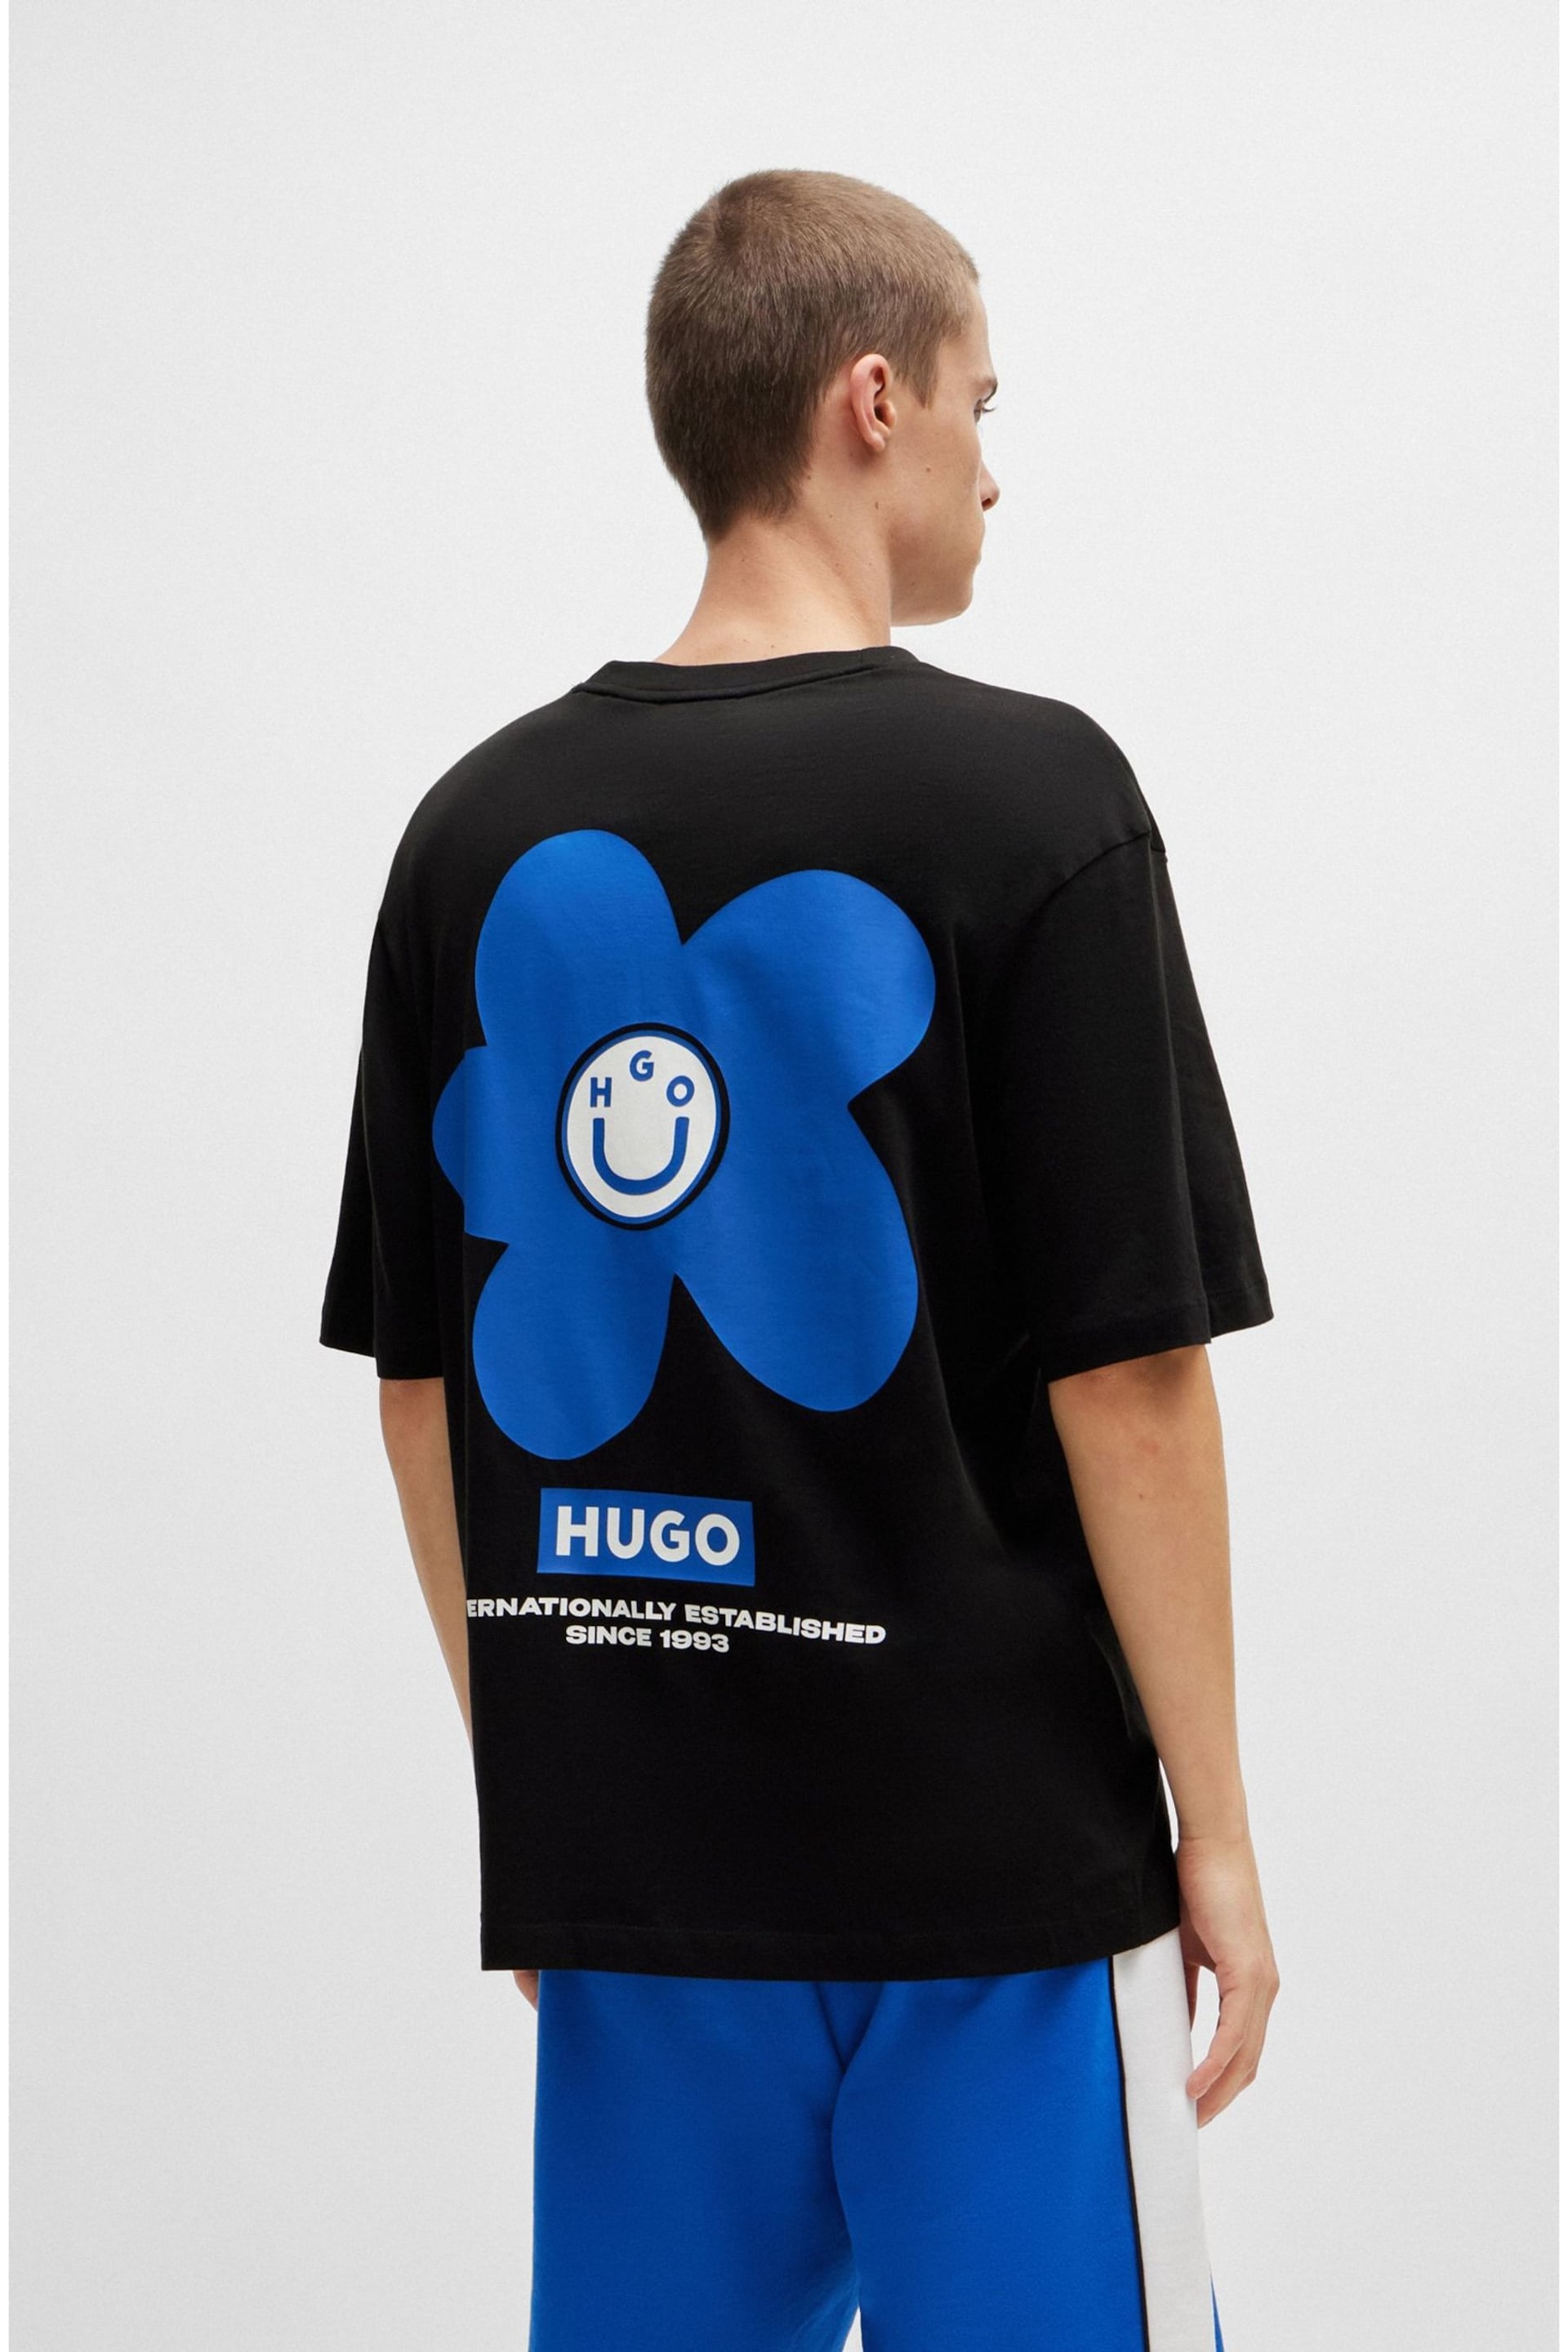 HUGO Blue Floral Graphic Back Print T-Shirt - Image 4 of 4